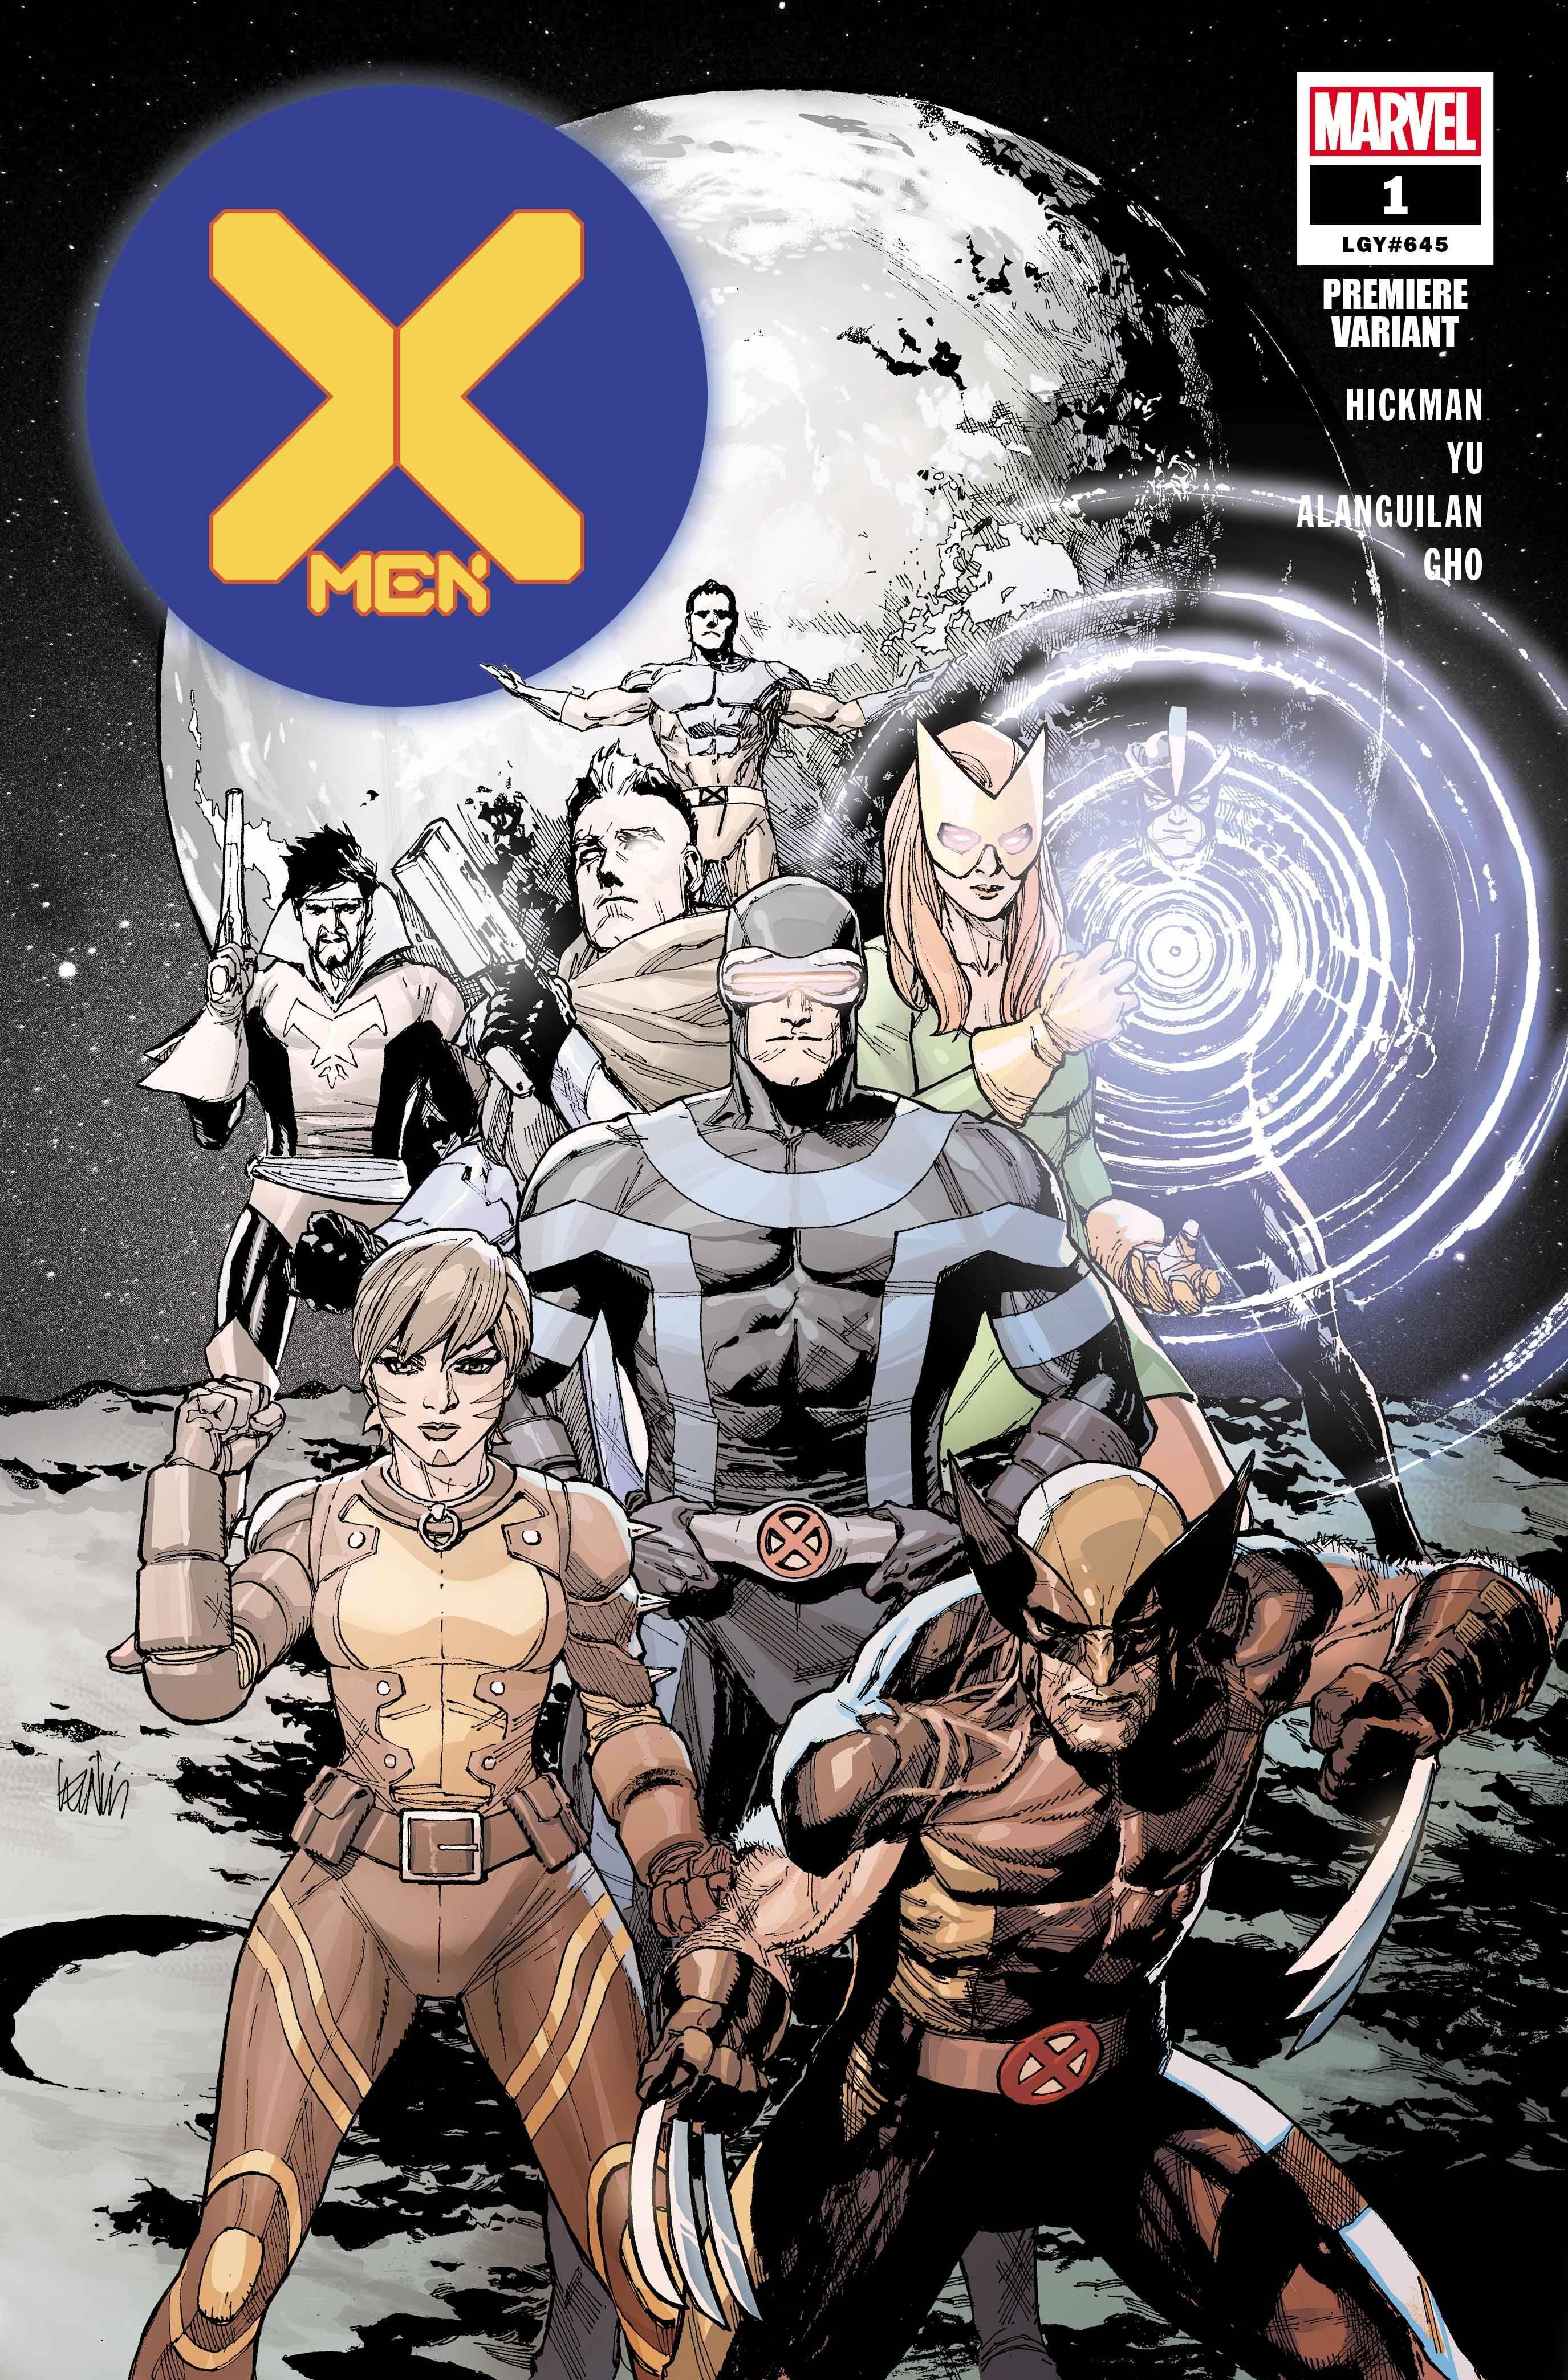 X-MEN VOL 5 (2019) #1 YU PREMIERE VAR DX - Kings Comics